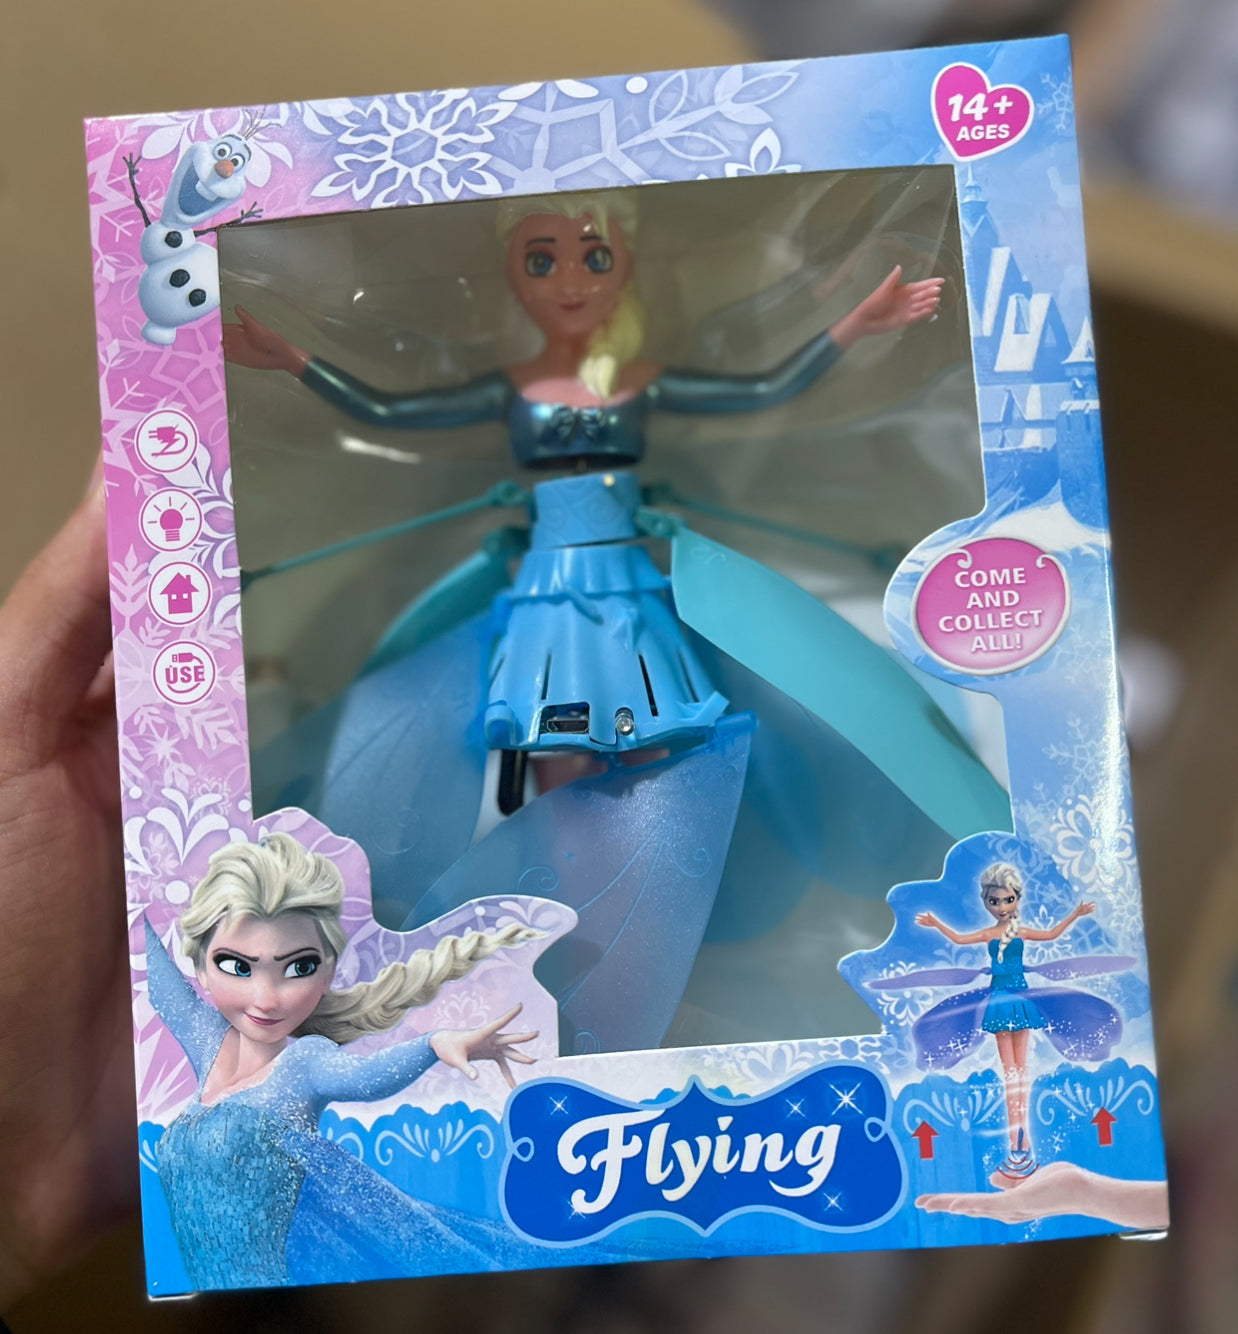 لعبة الدمية الطائرة - Flying Barbie